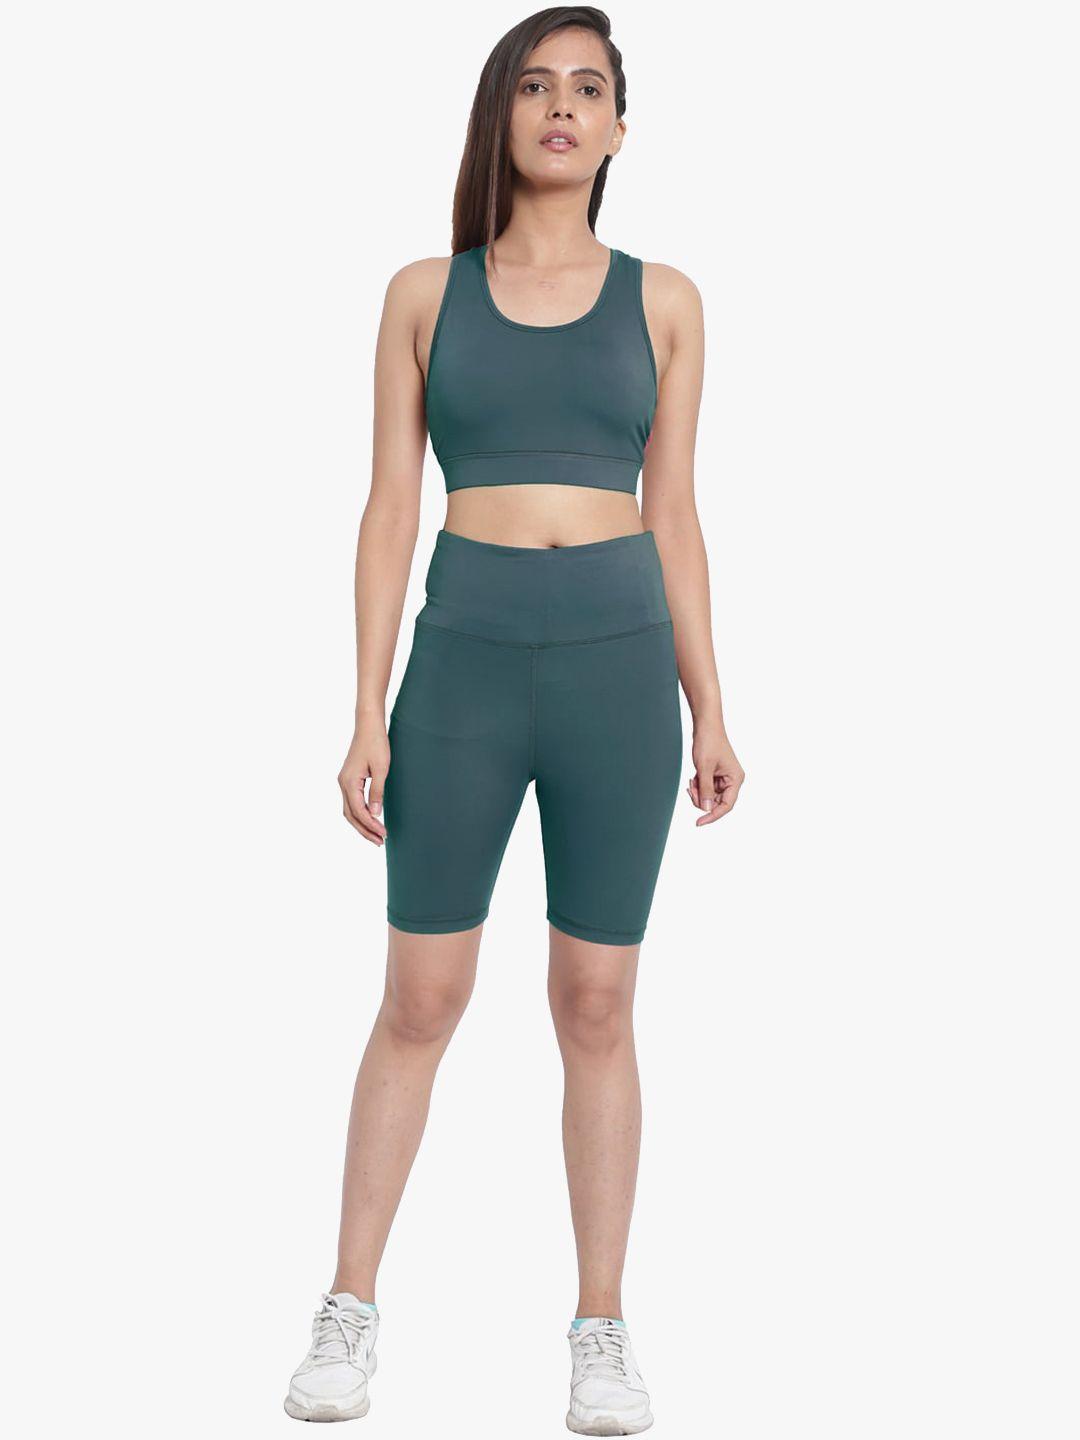 wearjukebox-women-olive-green-solid-sports-bra-set